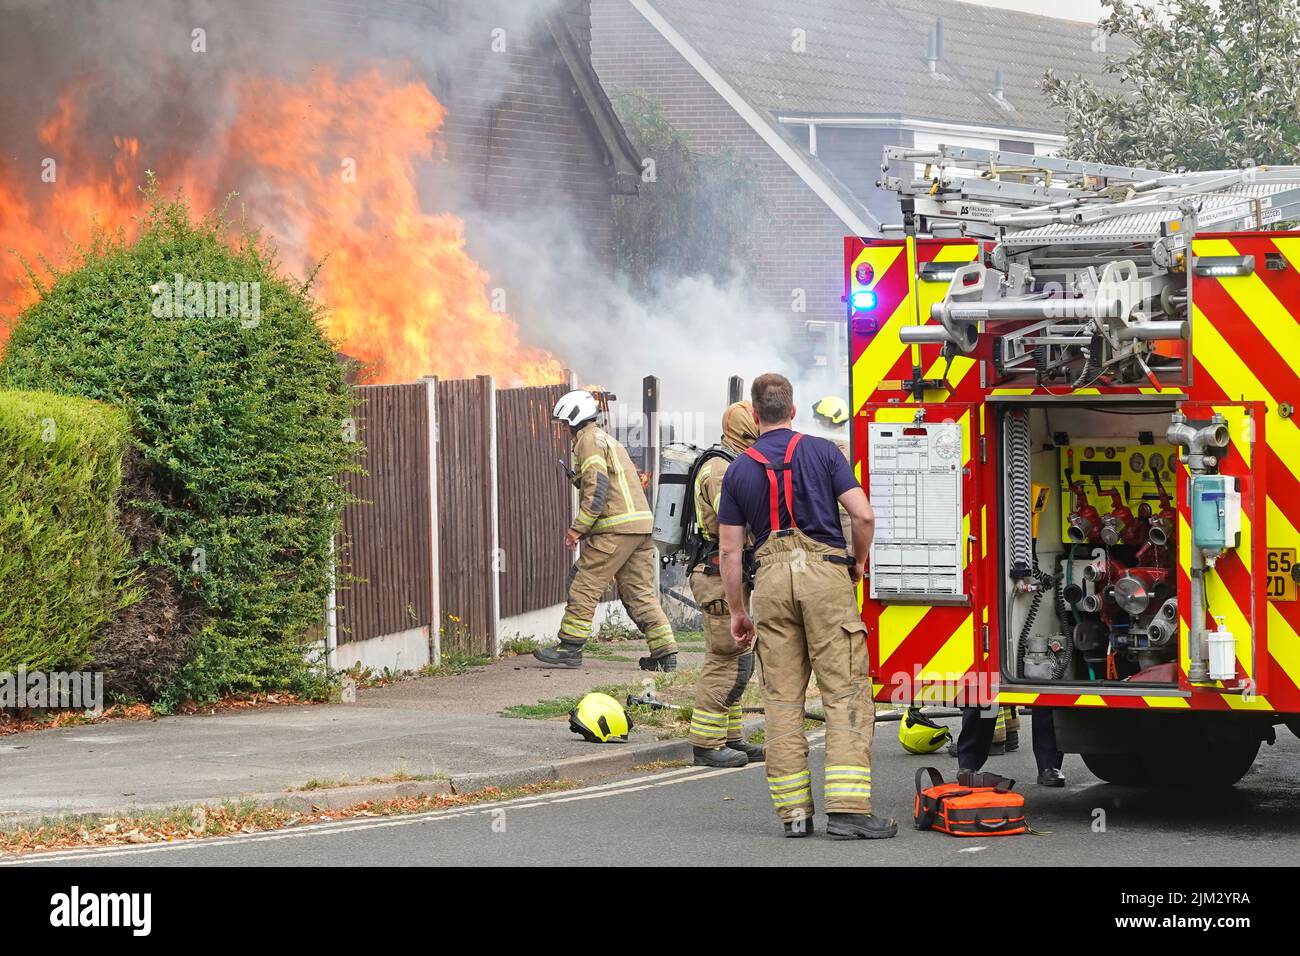 Feu moteur tendre vient d'arriver vue arrière portes ouvertes à la pompe à eau soupapes de commande pompiers travaillant sur maison feu flammes scène de rue Essex Angleterre Royaume-Uni Banque D'Images